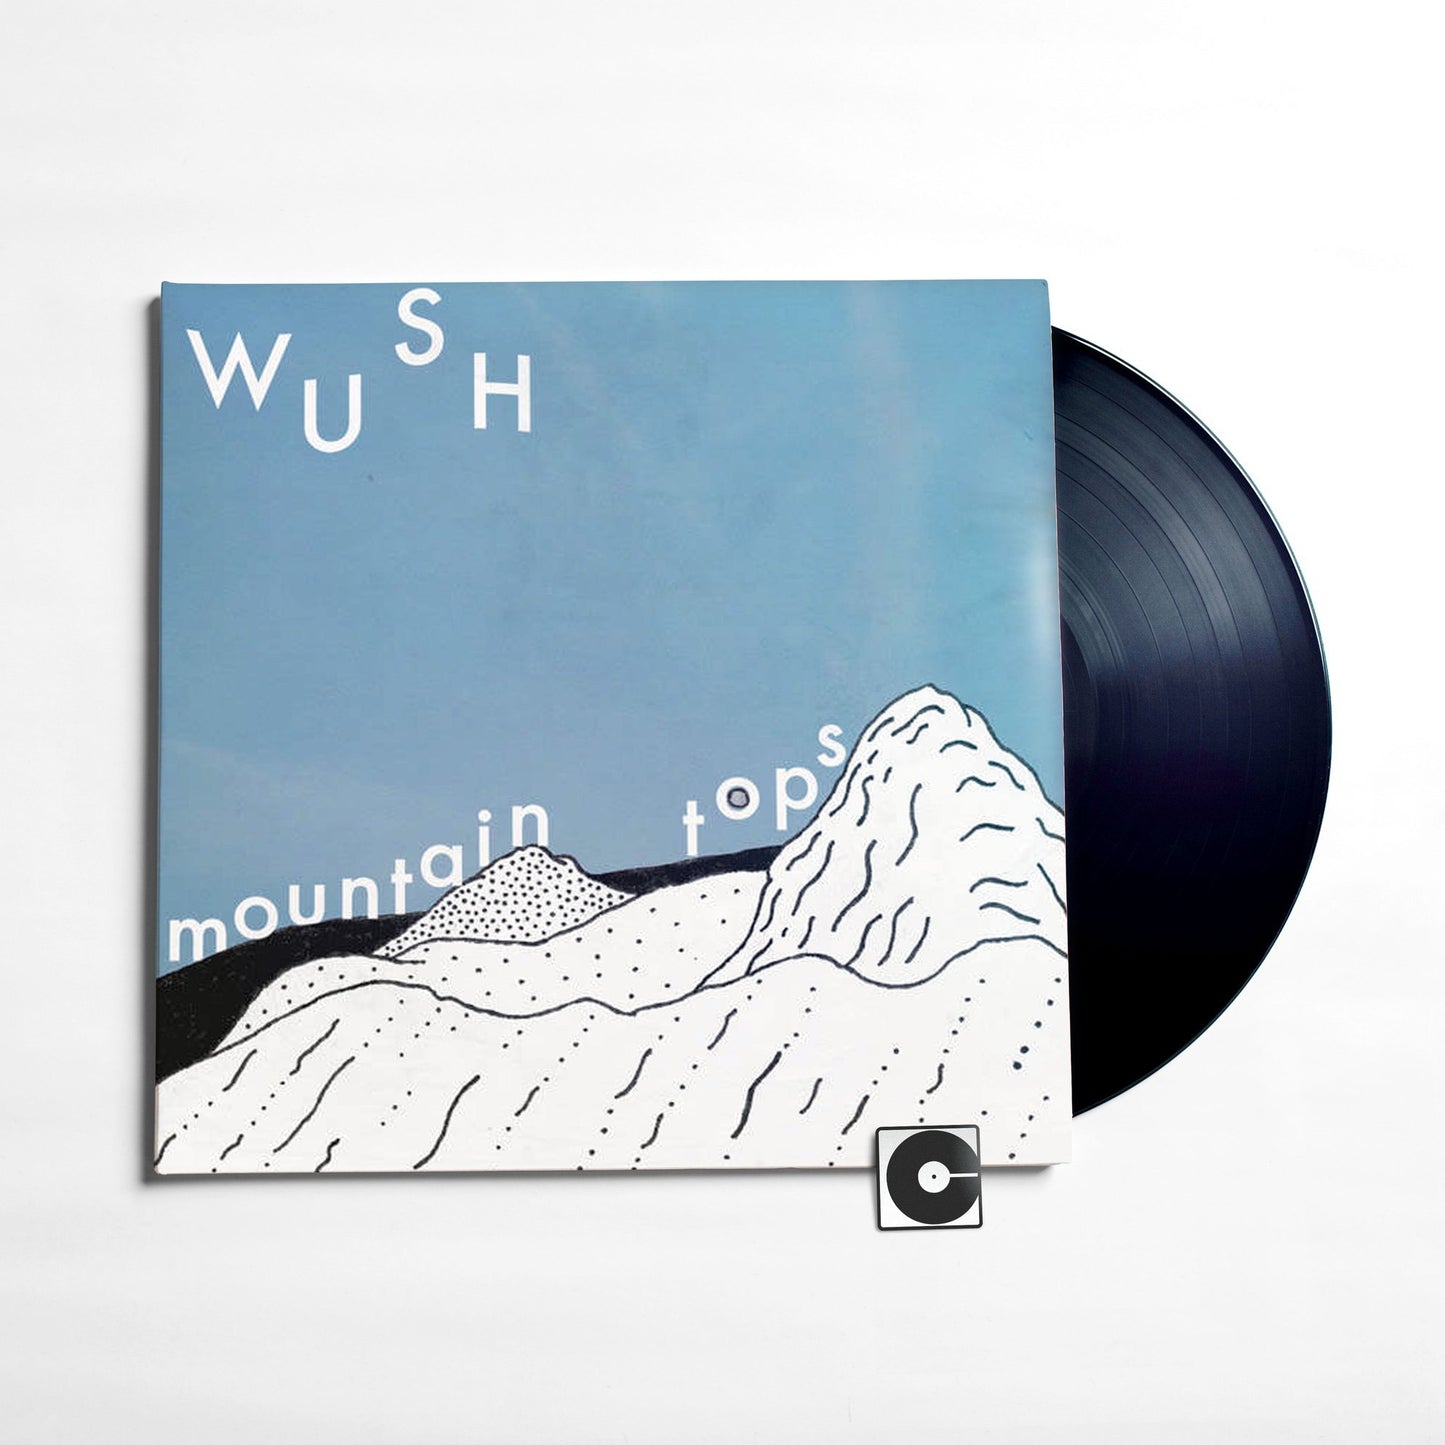 Wush - "Mountain Tops"